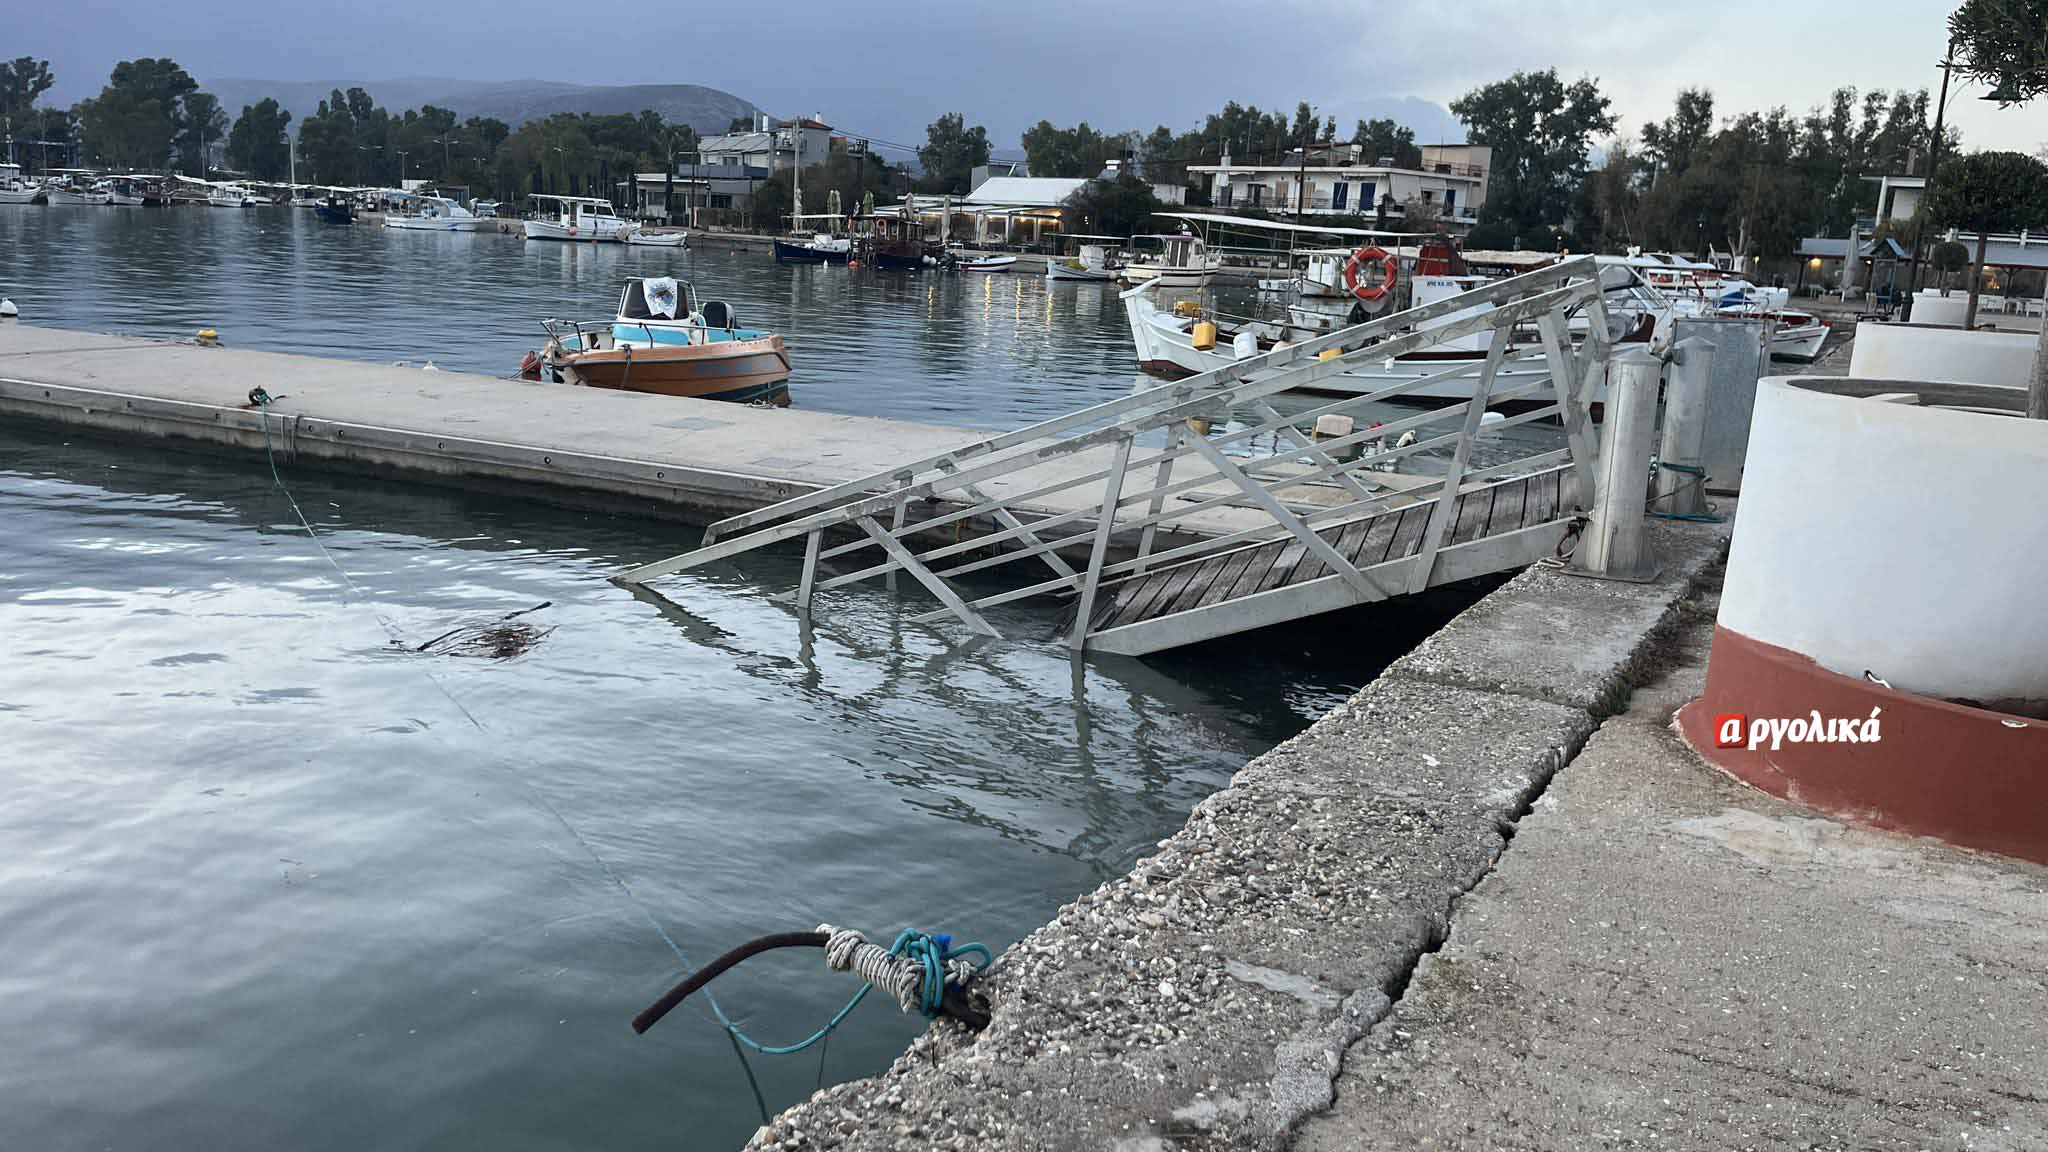 Νέα Κίος: Αποκολλήθηκε η πλωτή εξέδρα 